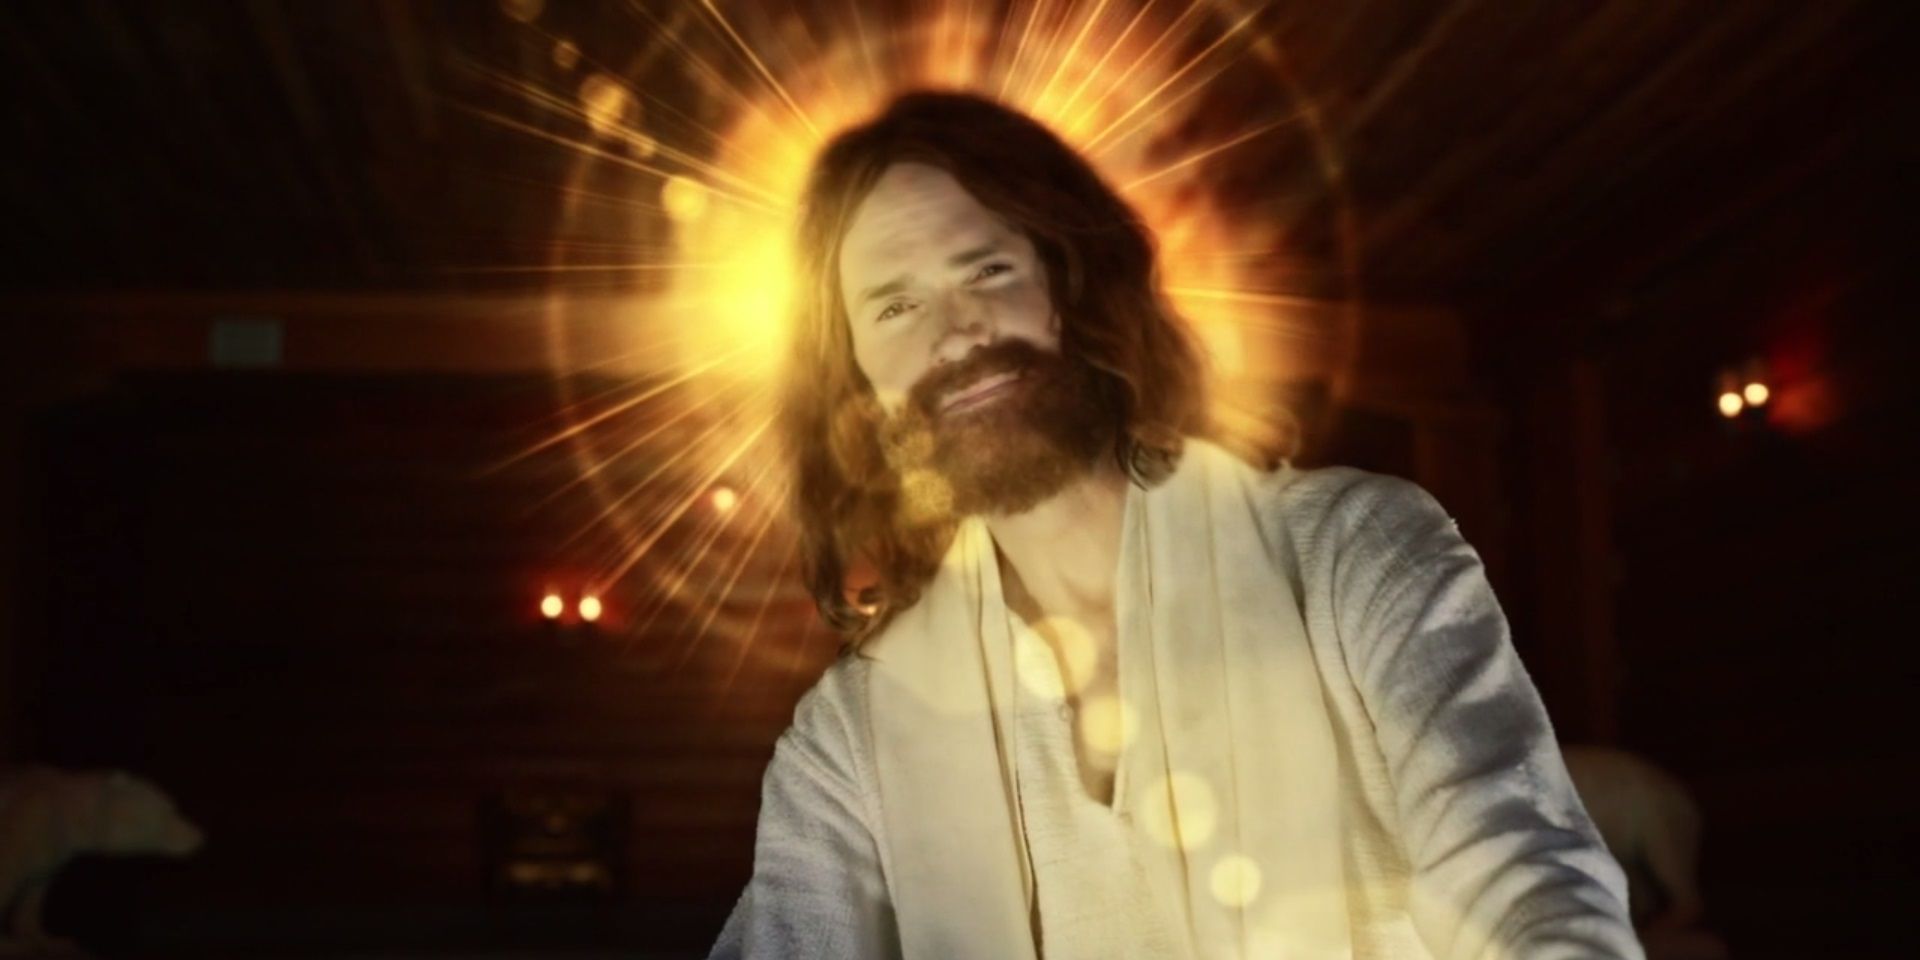 Jesus as he appeared in American Gods